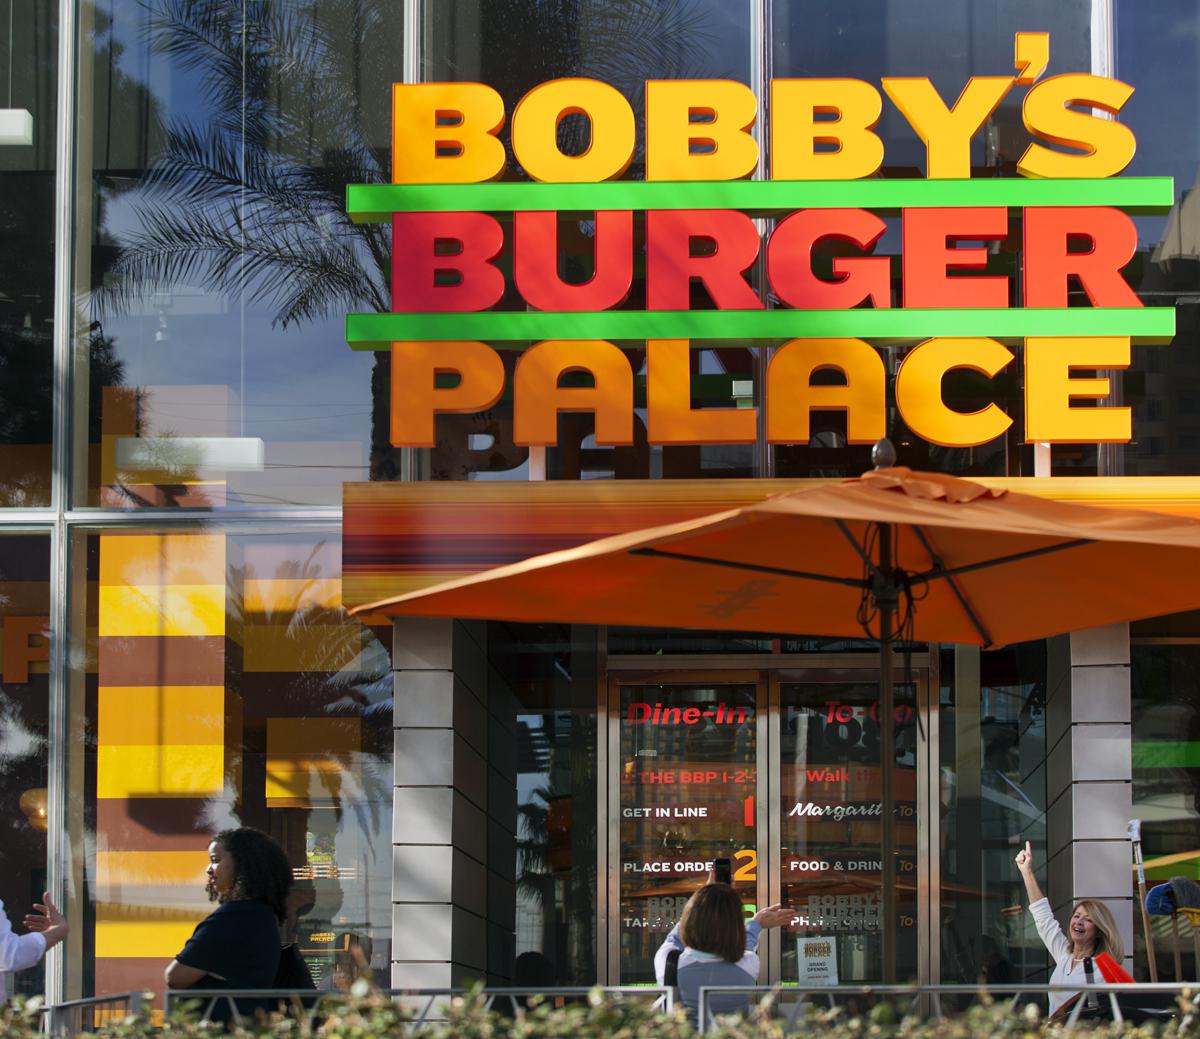 Bobbys Burger Palace